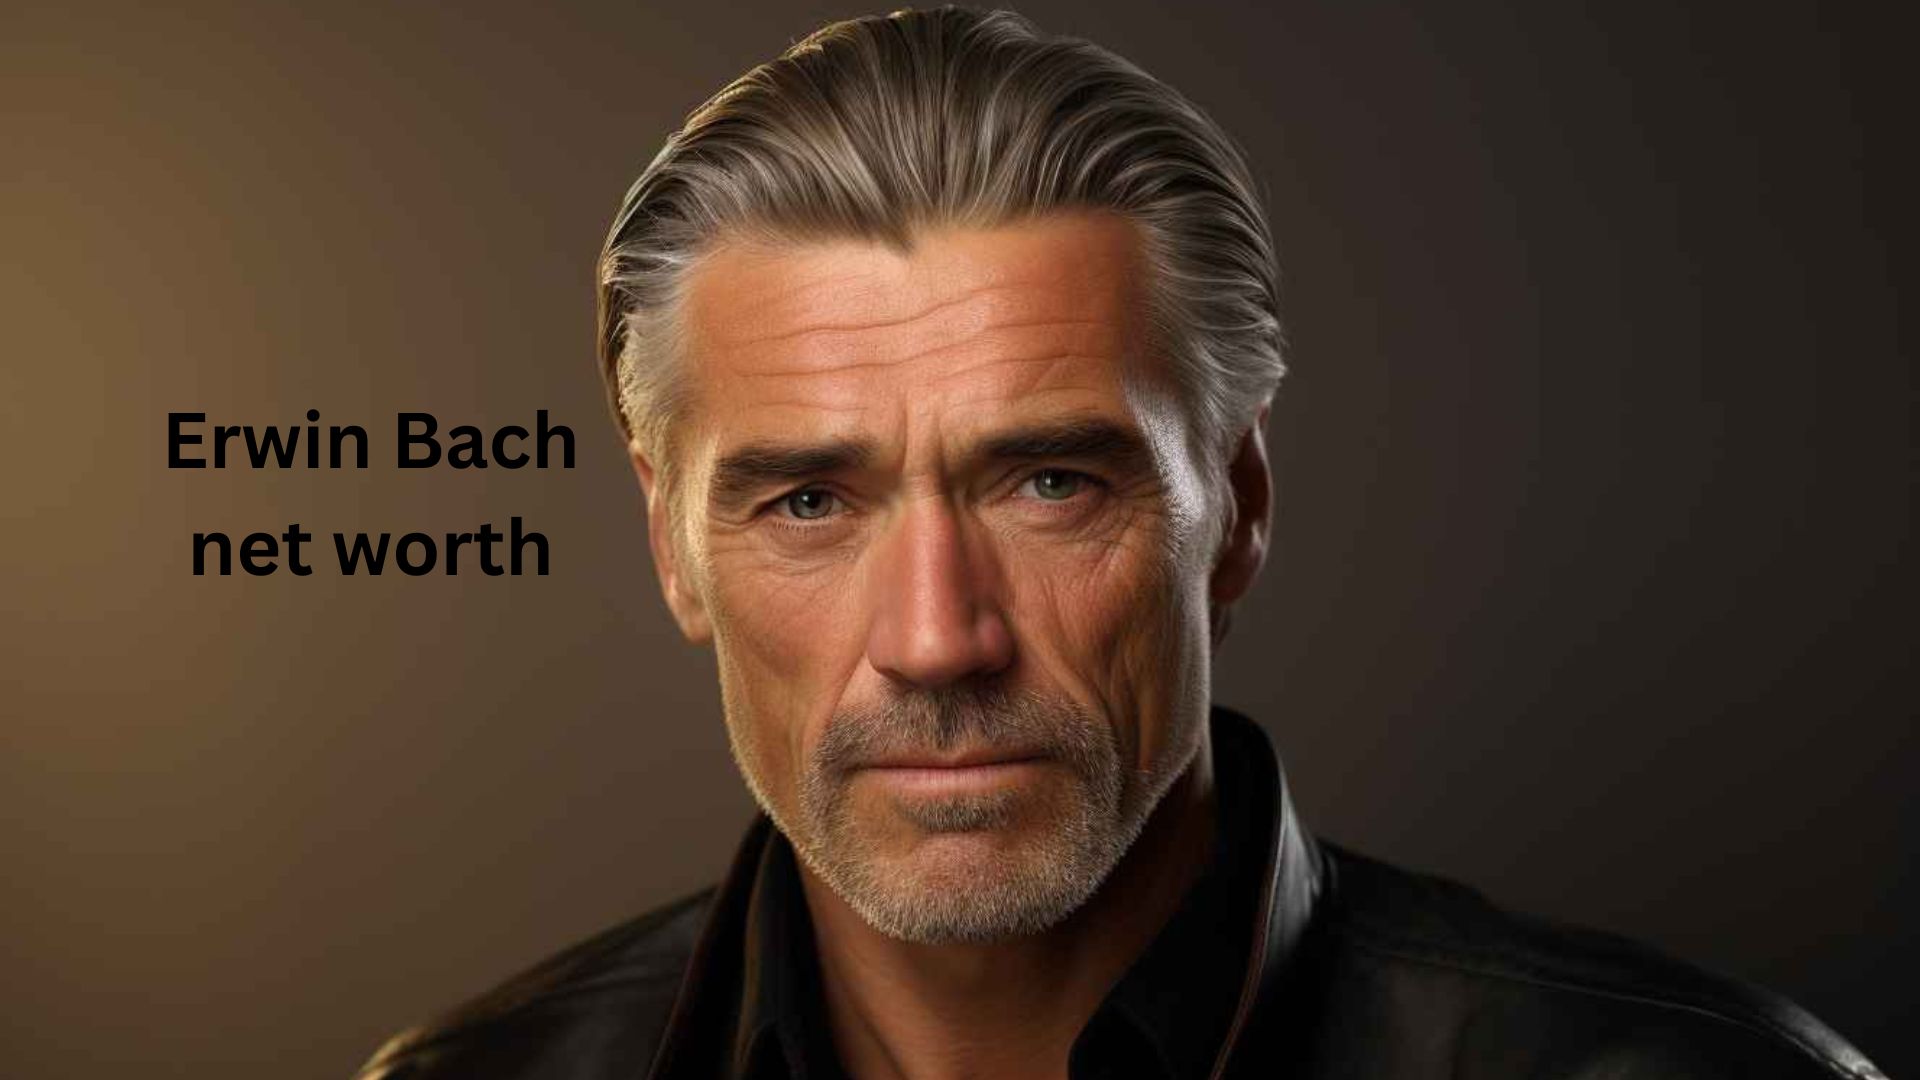 Erwin Bach net worth